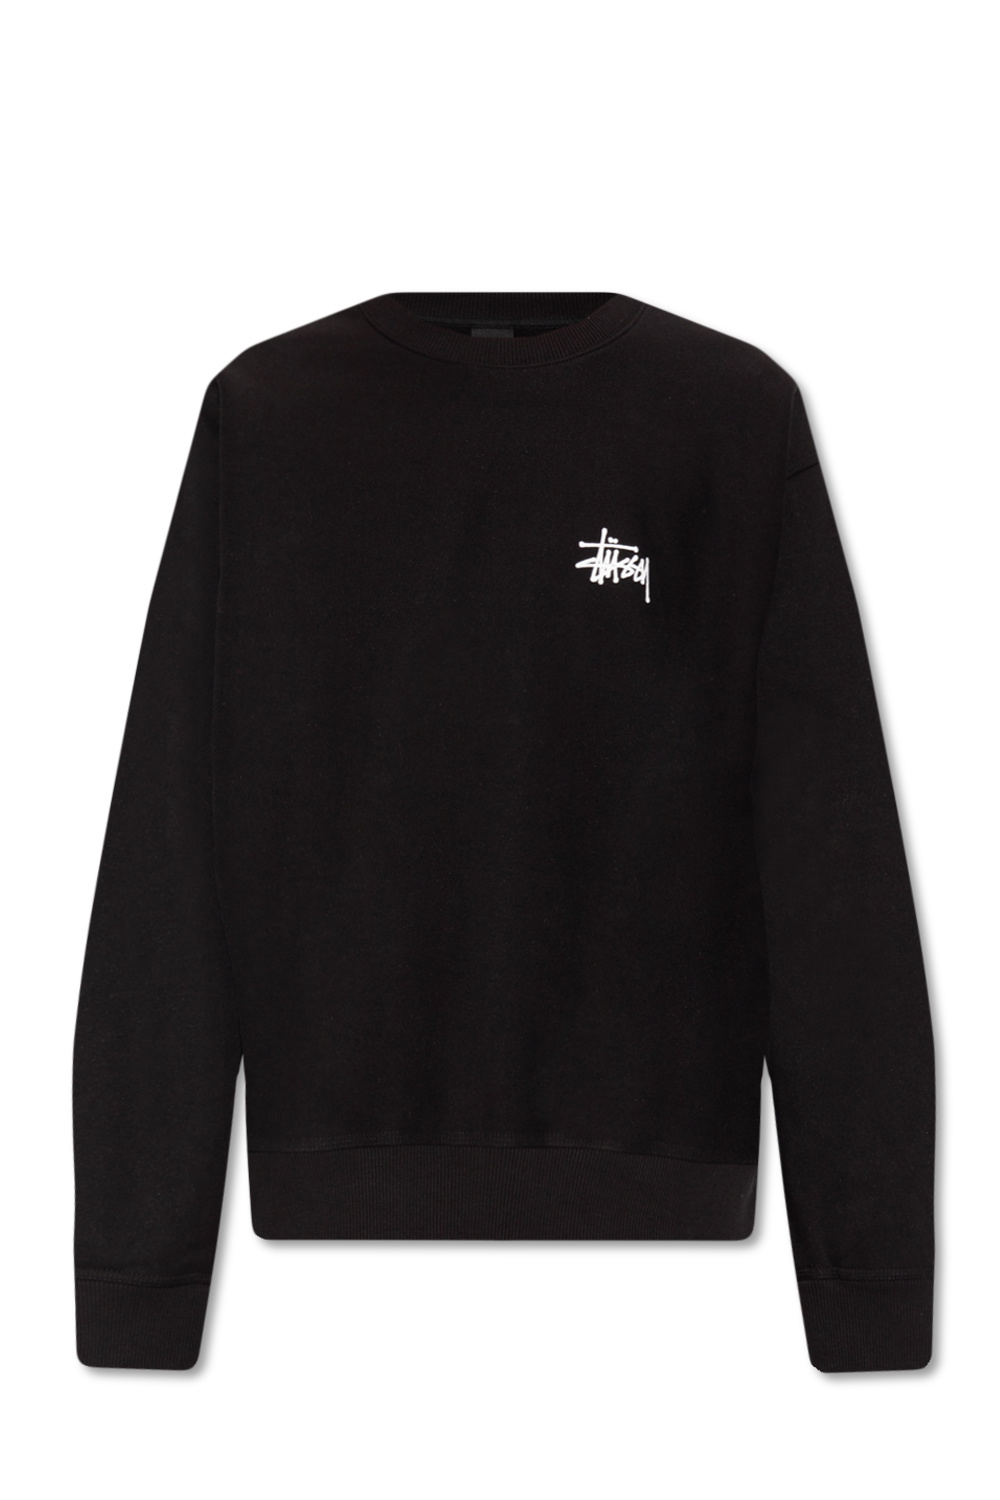 Black Vans Still Wavy hoodie in black Stussy - Karl Lagerfeld logo